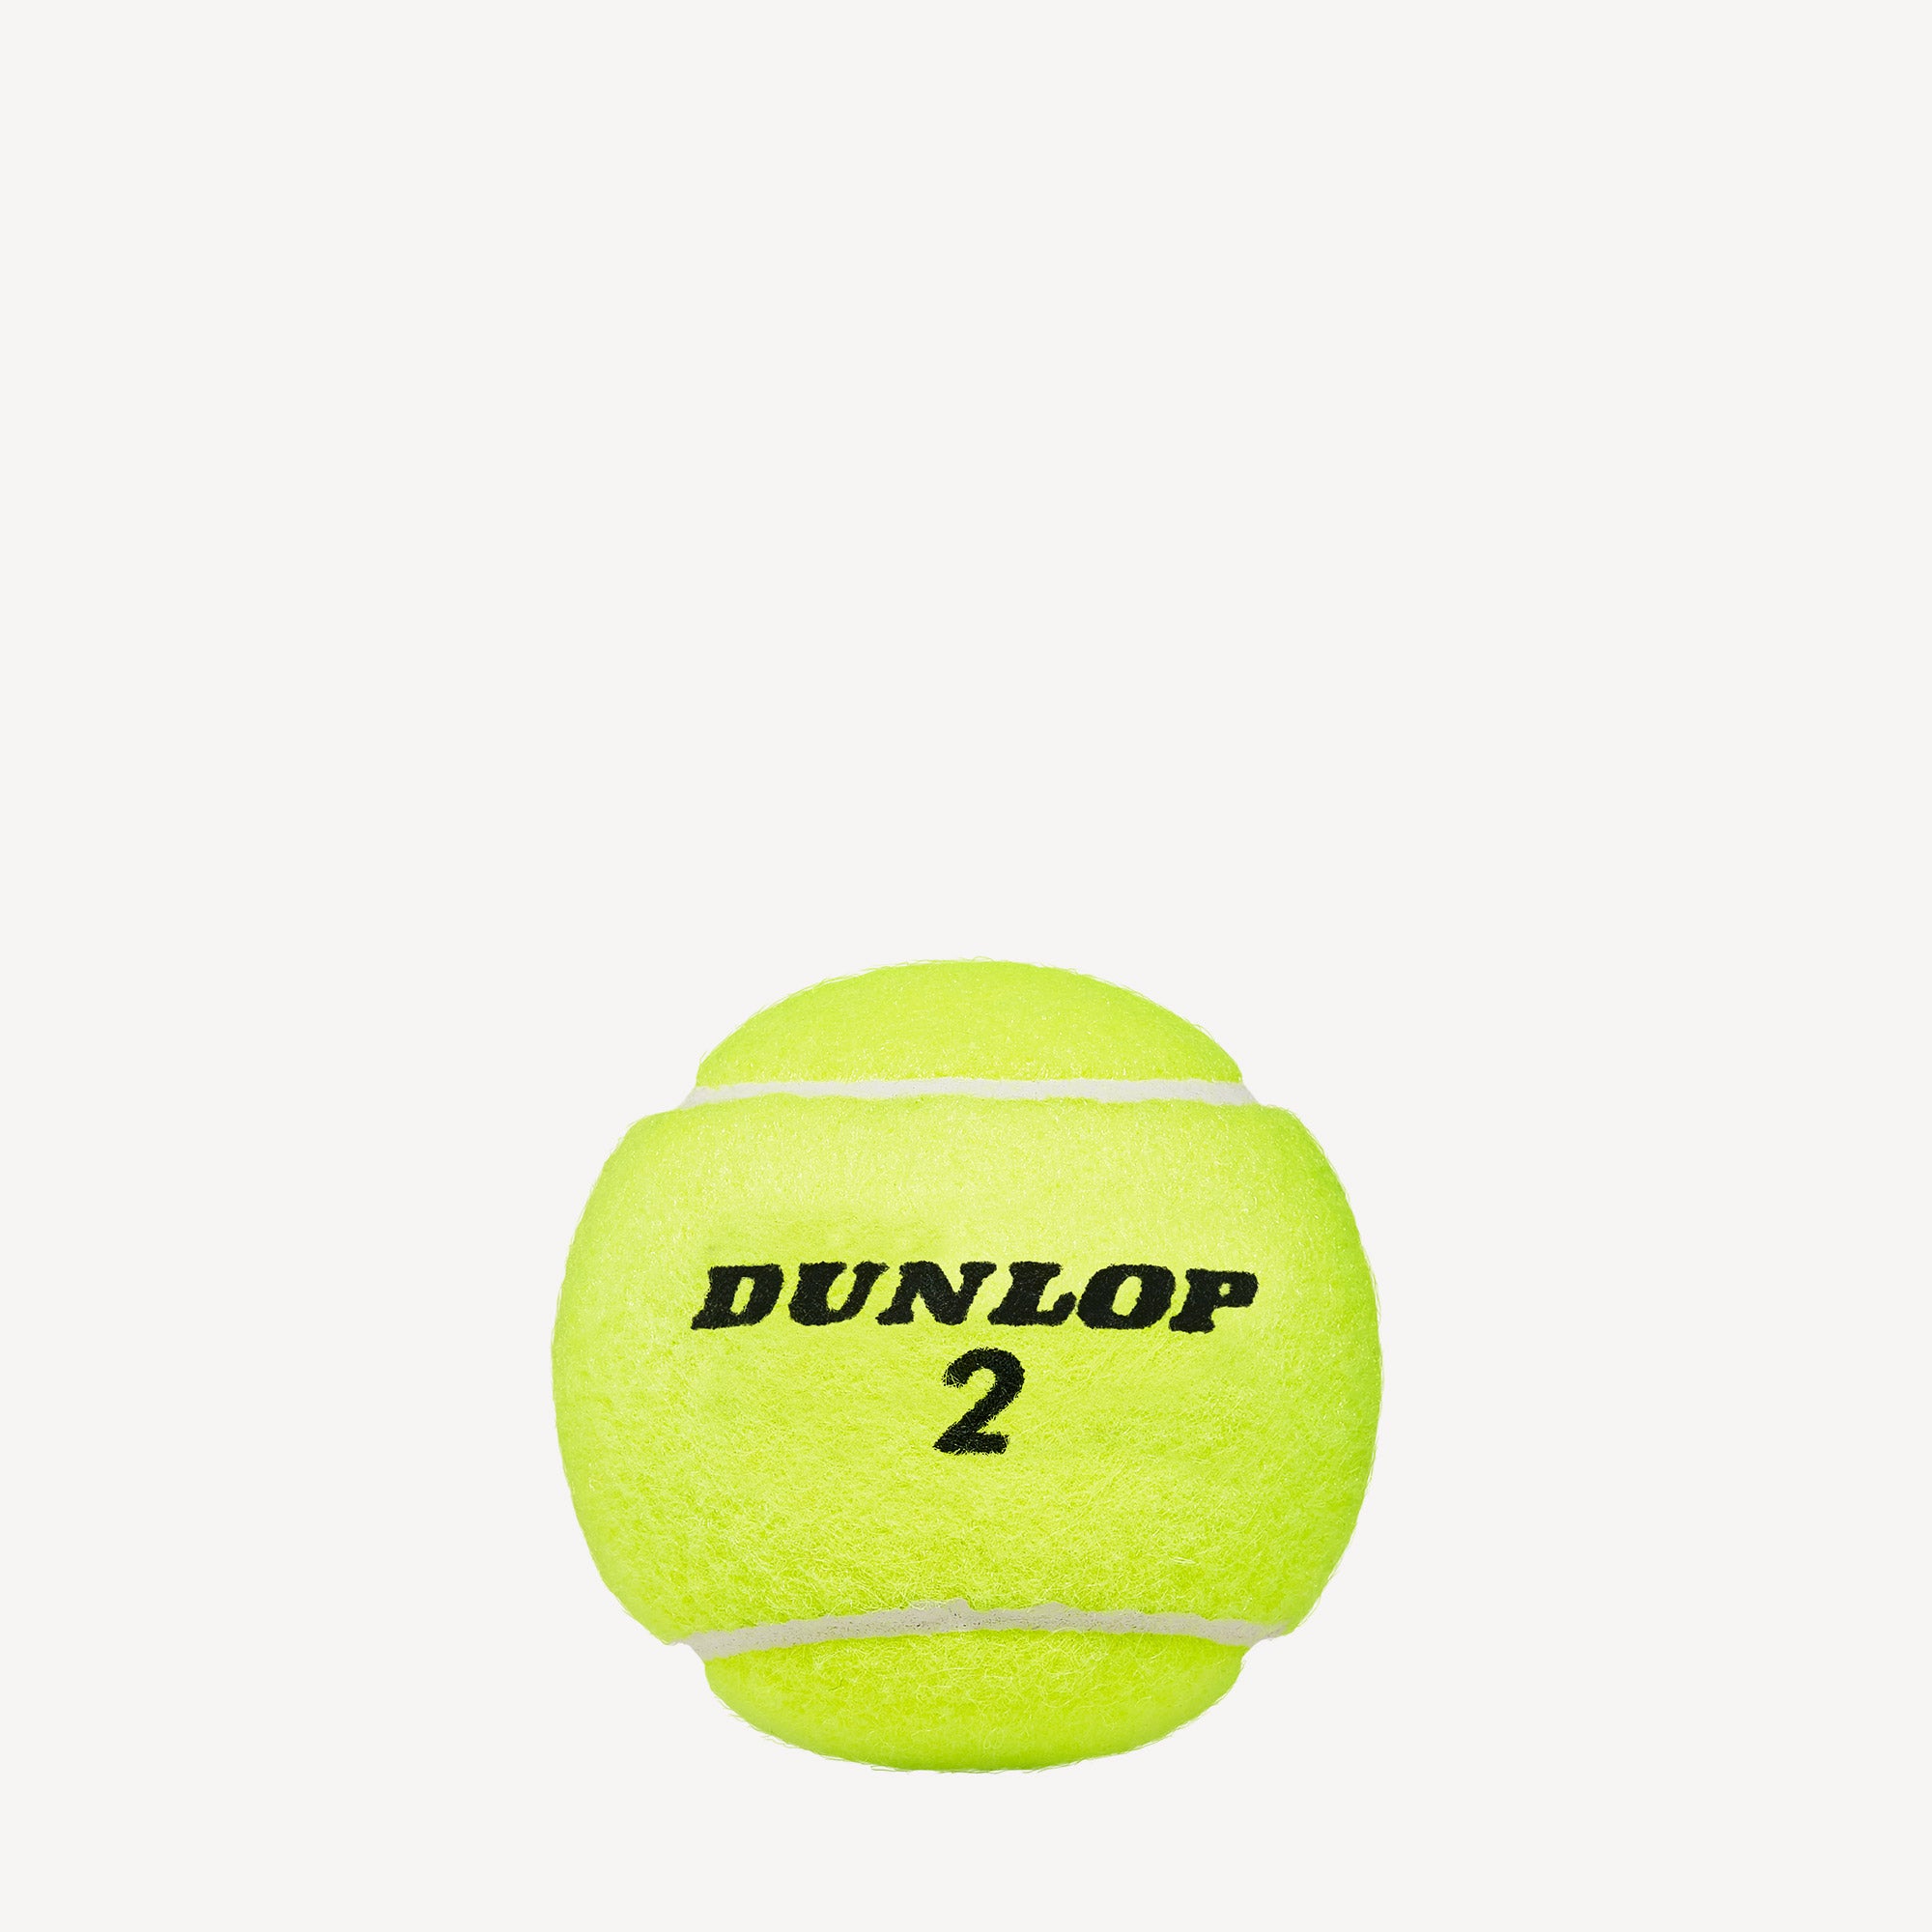 Dunlop Australian Open 4 Tennis Balls 2